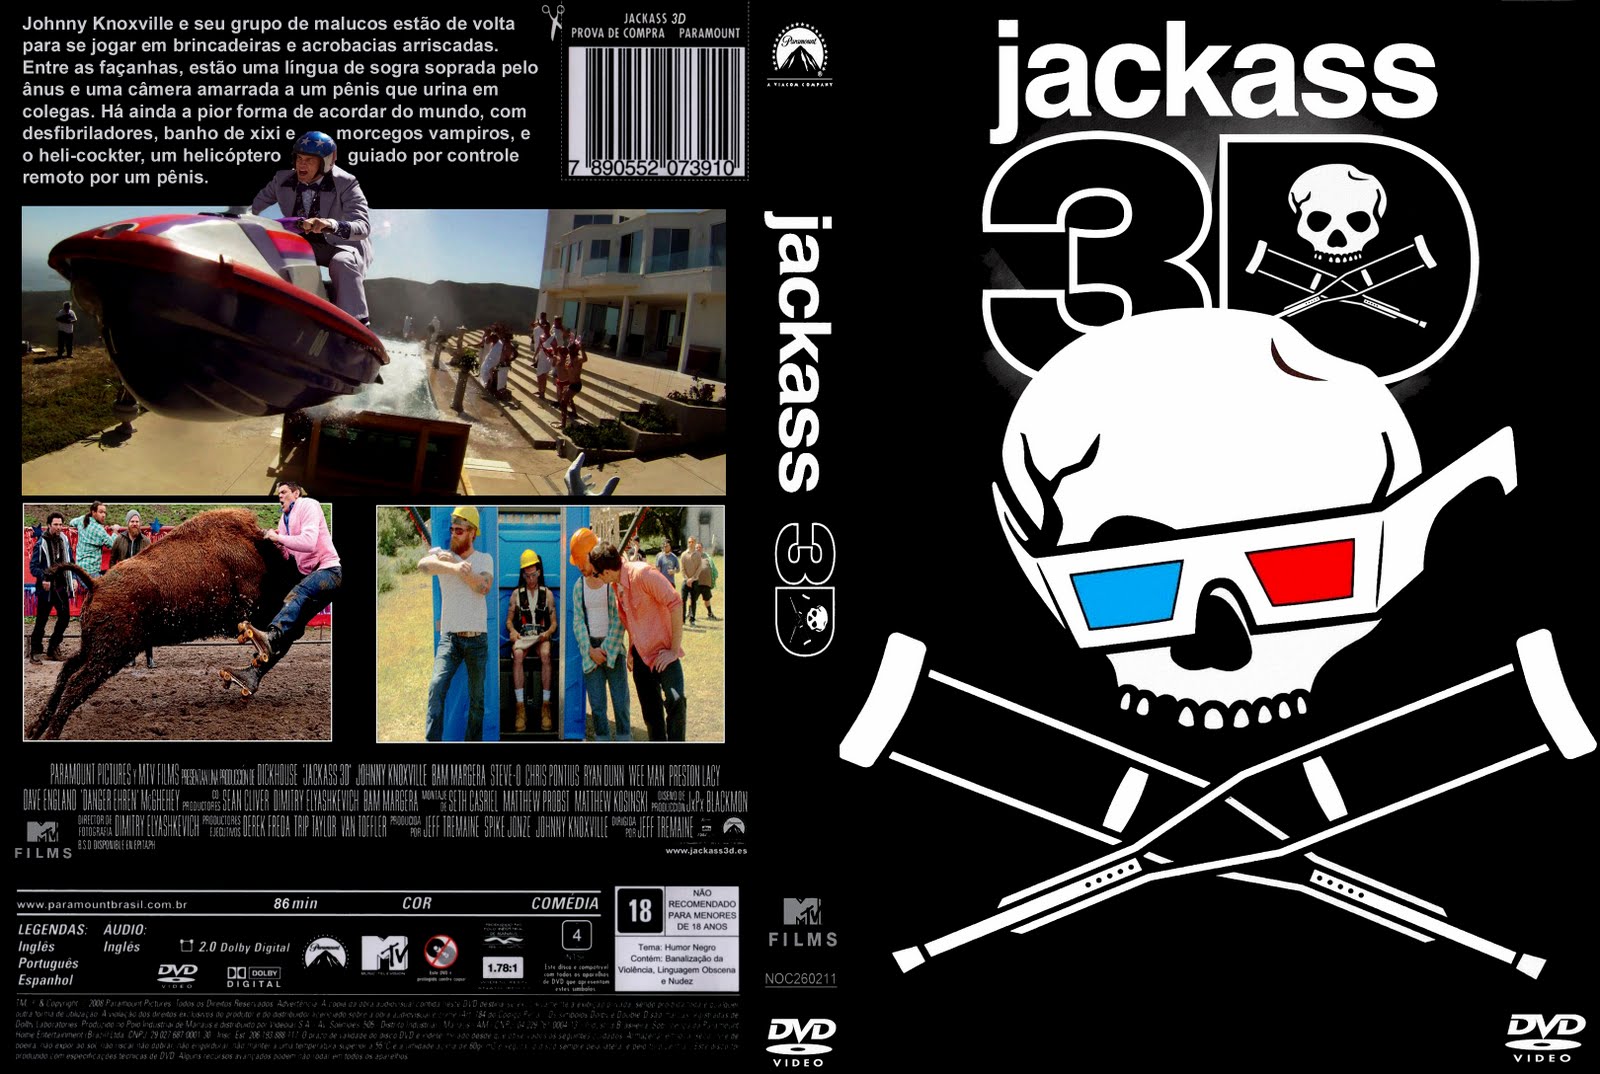 Jackass 3d Online Subtitulada